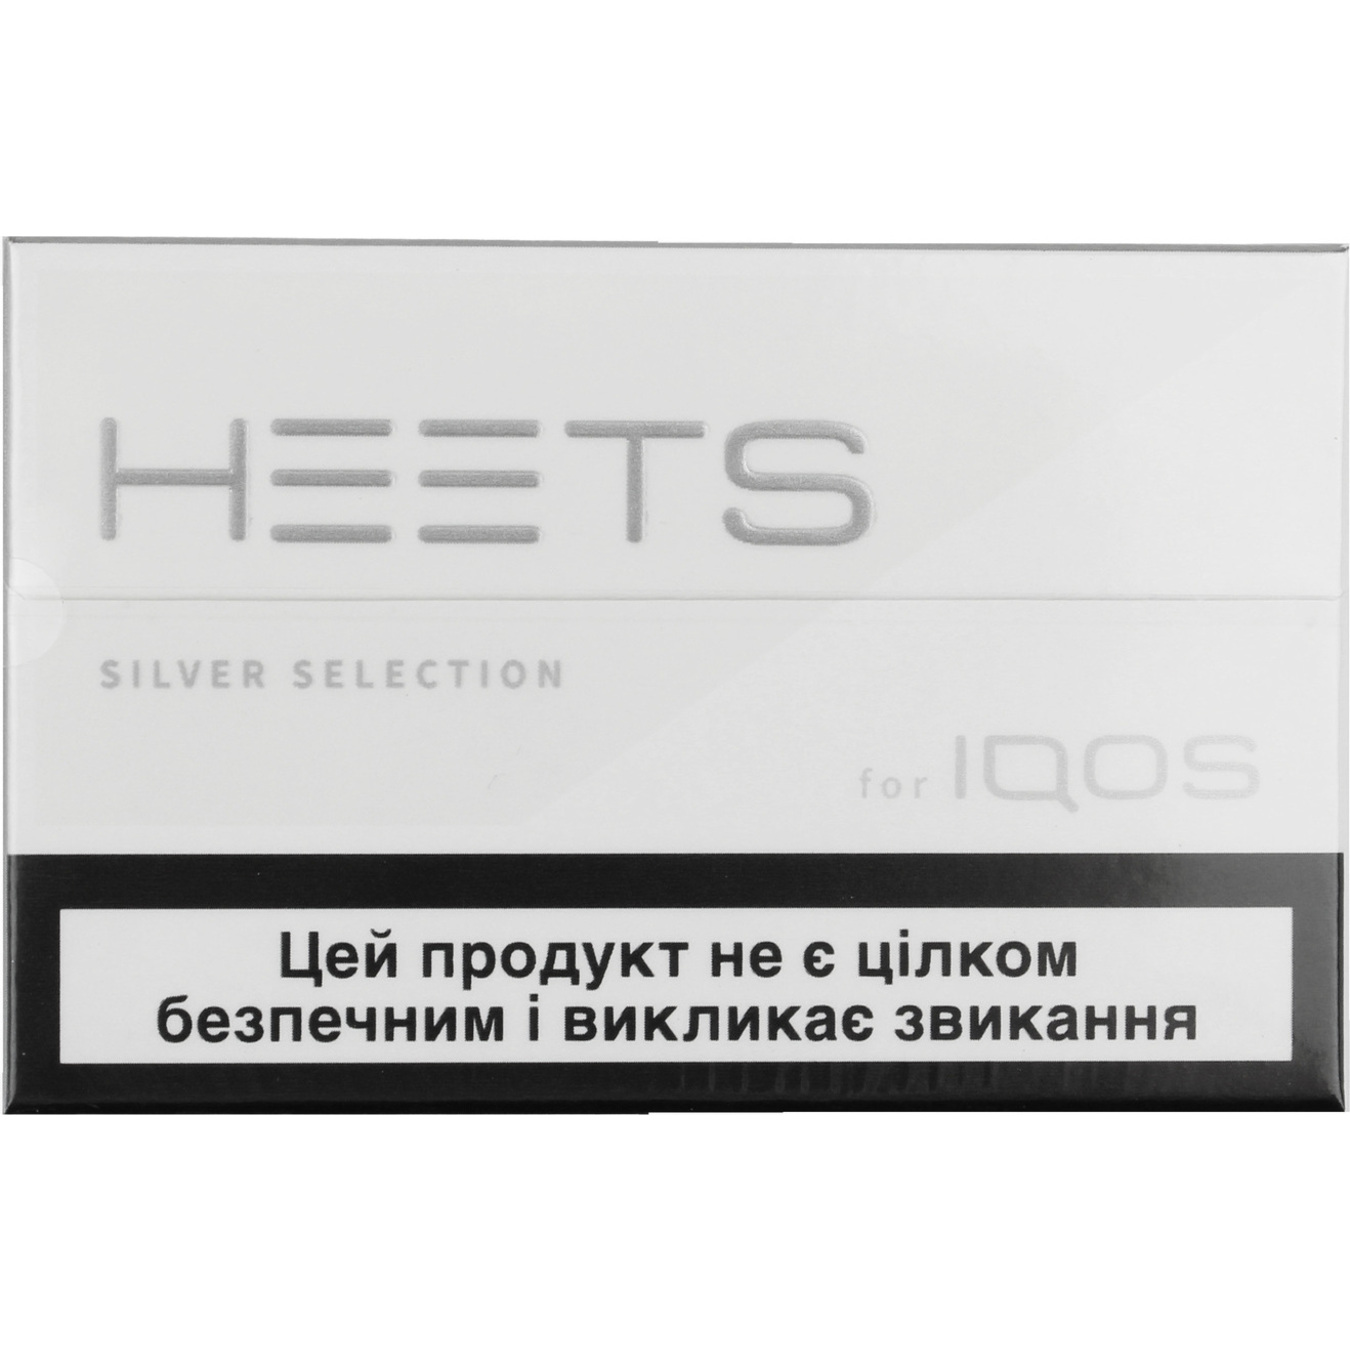 Стики Heets Silver Selection 20шт (цена указана без акциза)